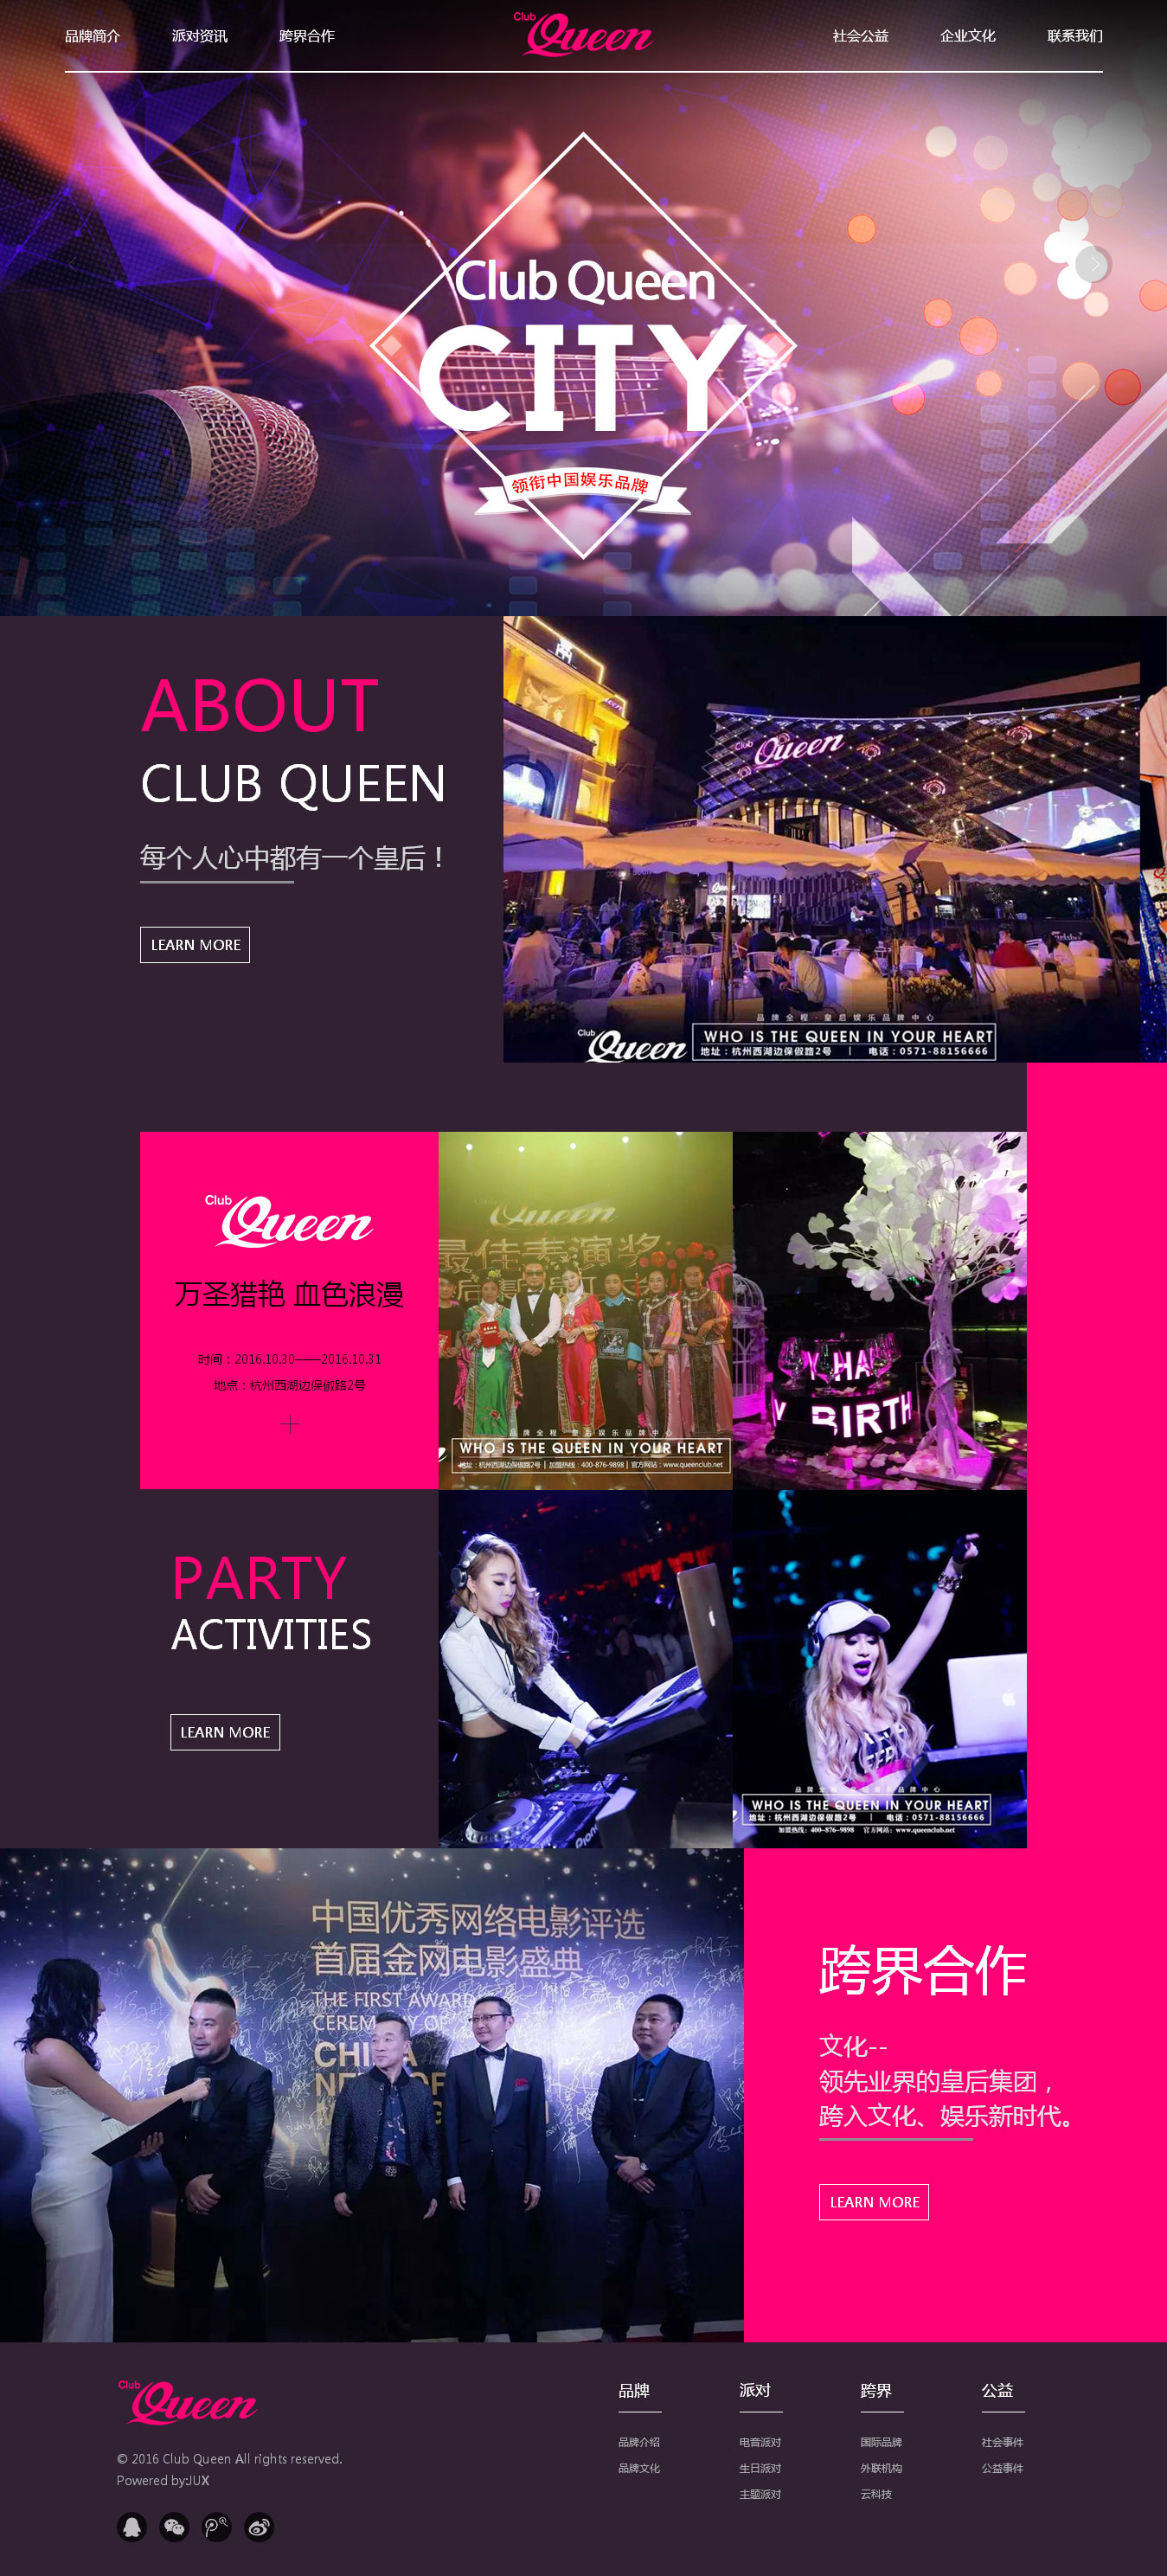 皇后酒吧 CLUB QUEEN网站效果图